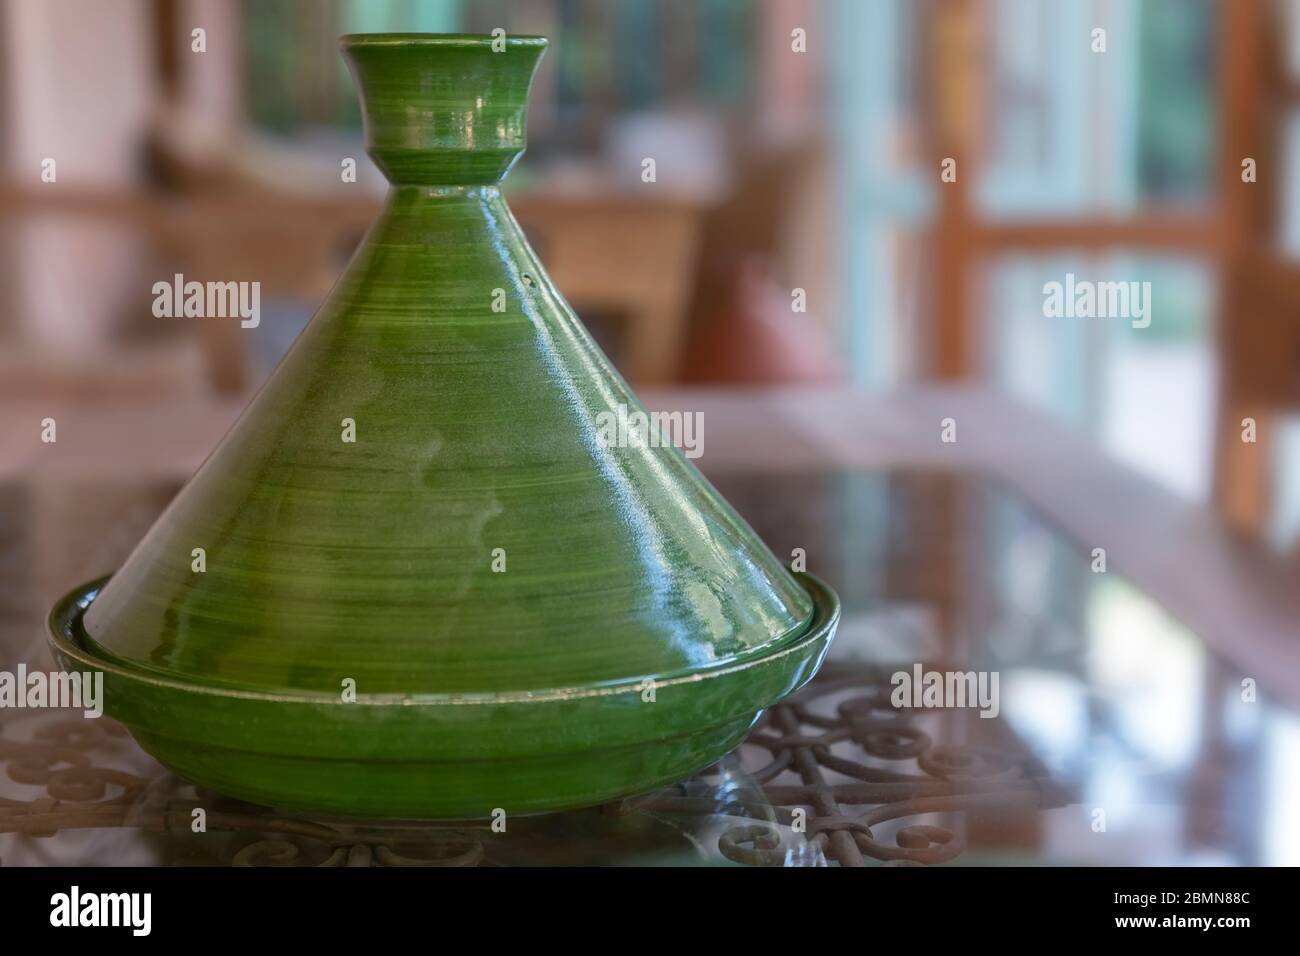 Tagine en céramique marocaine (tajine), vert. Céramique authentique, traditionnelle, chère et de haute qualité, utilisable pour la cuisson. Ha. Exclusive Banque D'Images